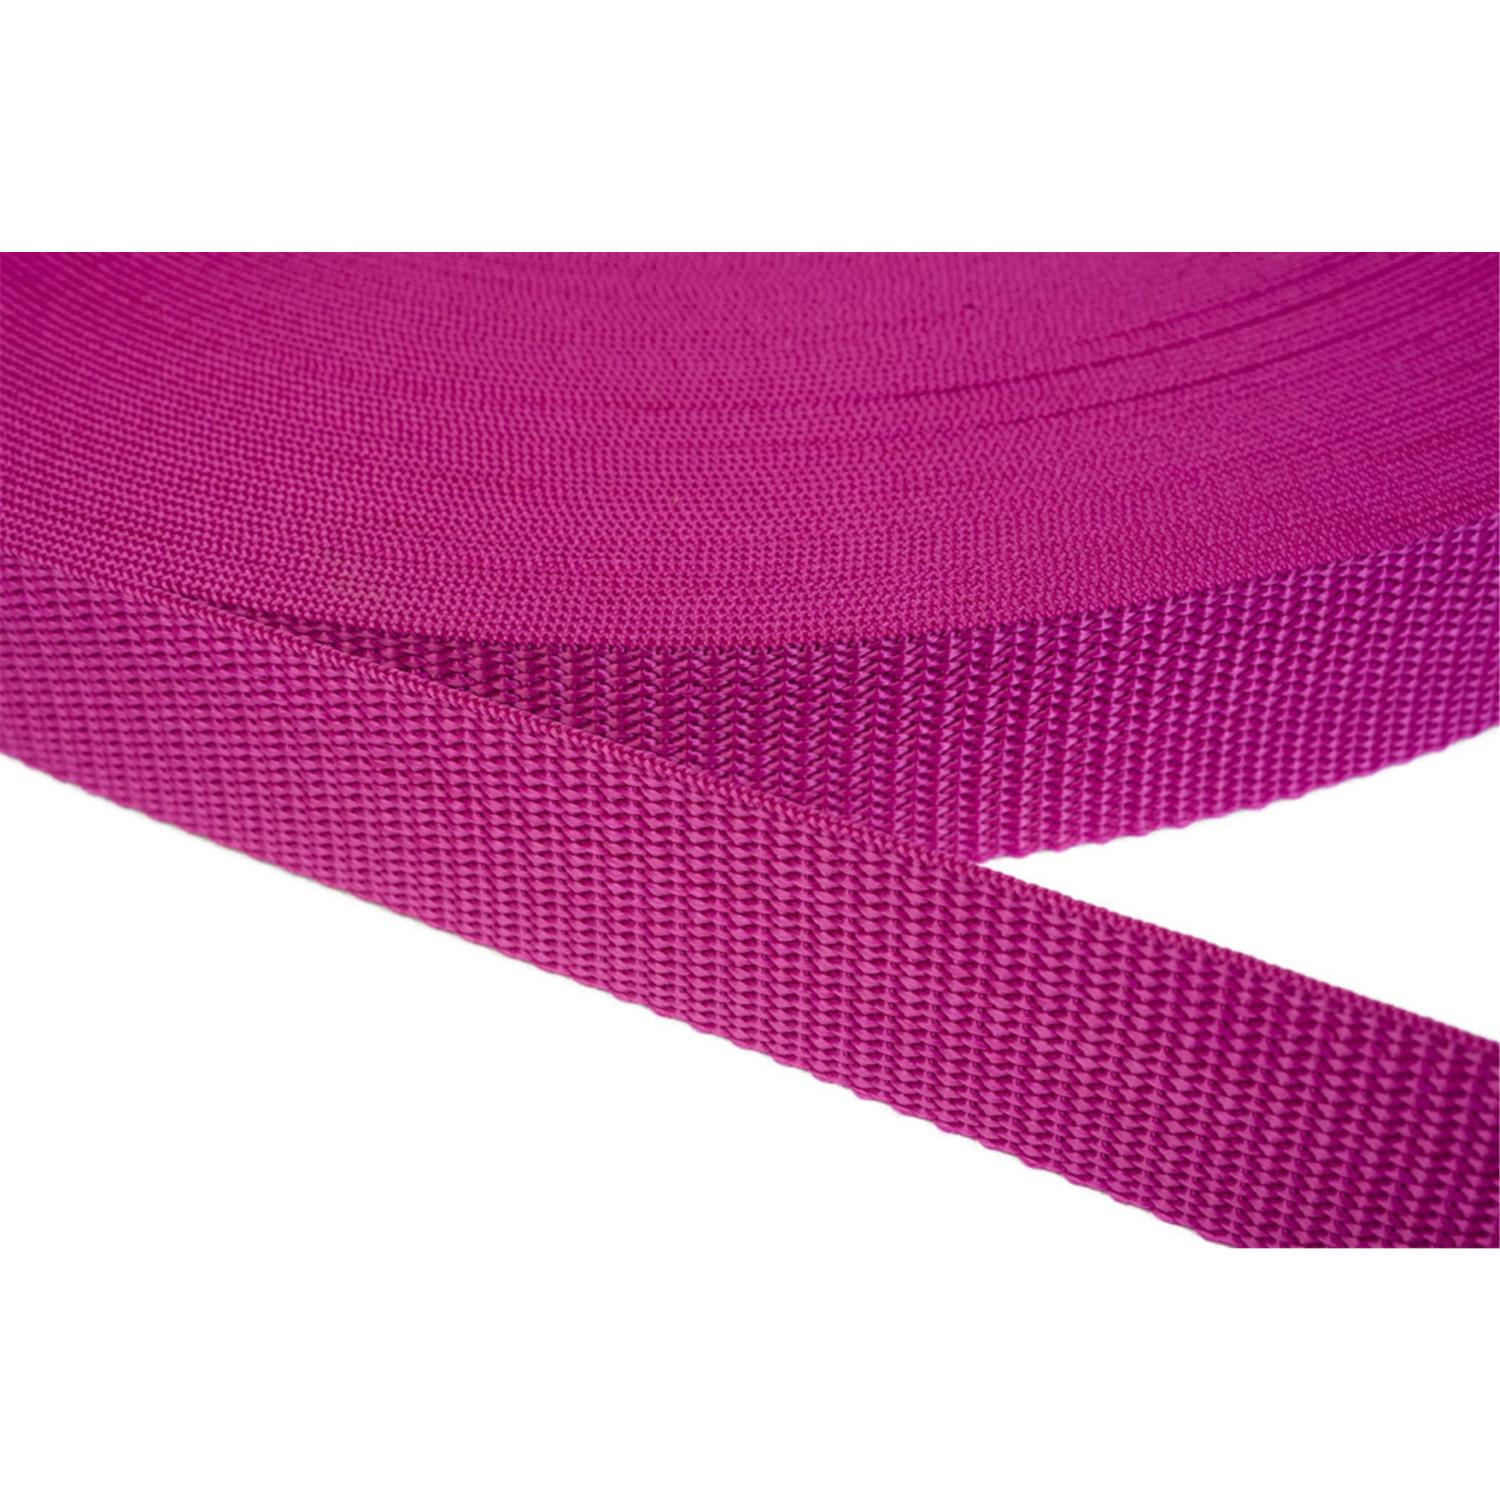 Gurtband 20mm breit aus Polypropylen in 41 Farben 17 - dunkles magenta 50 Meter